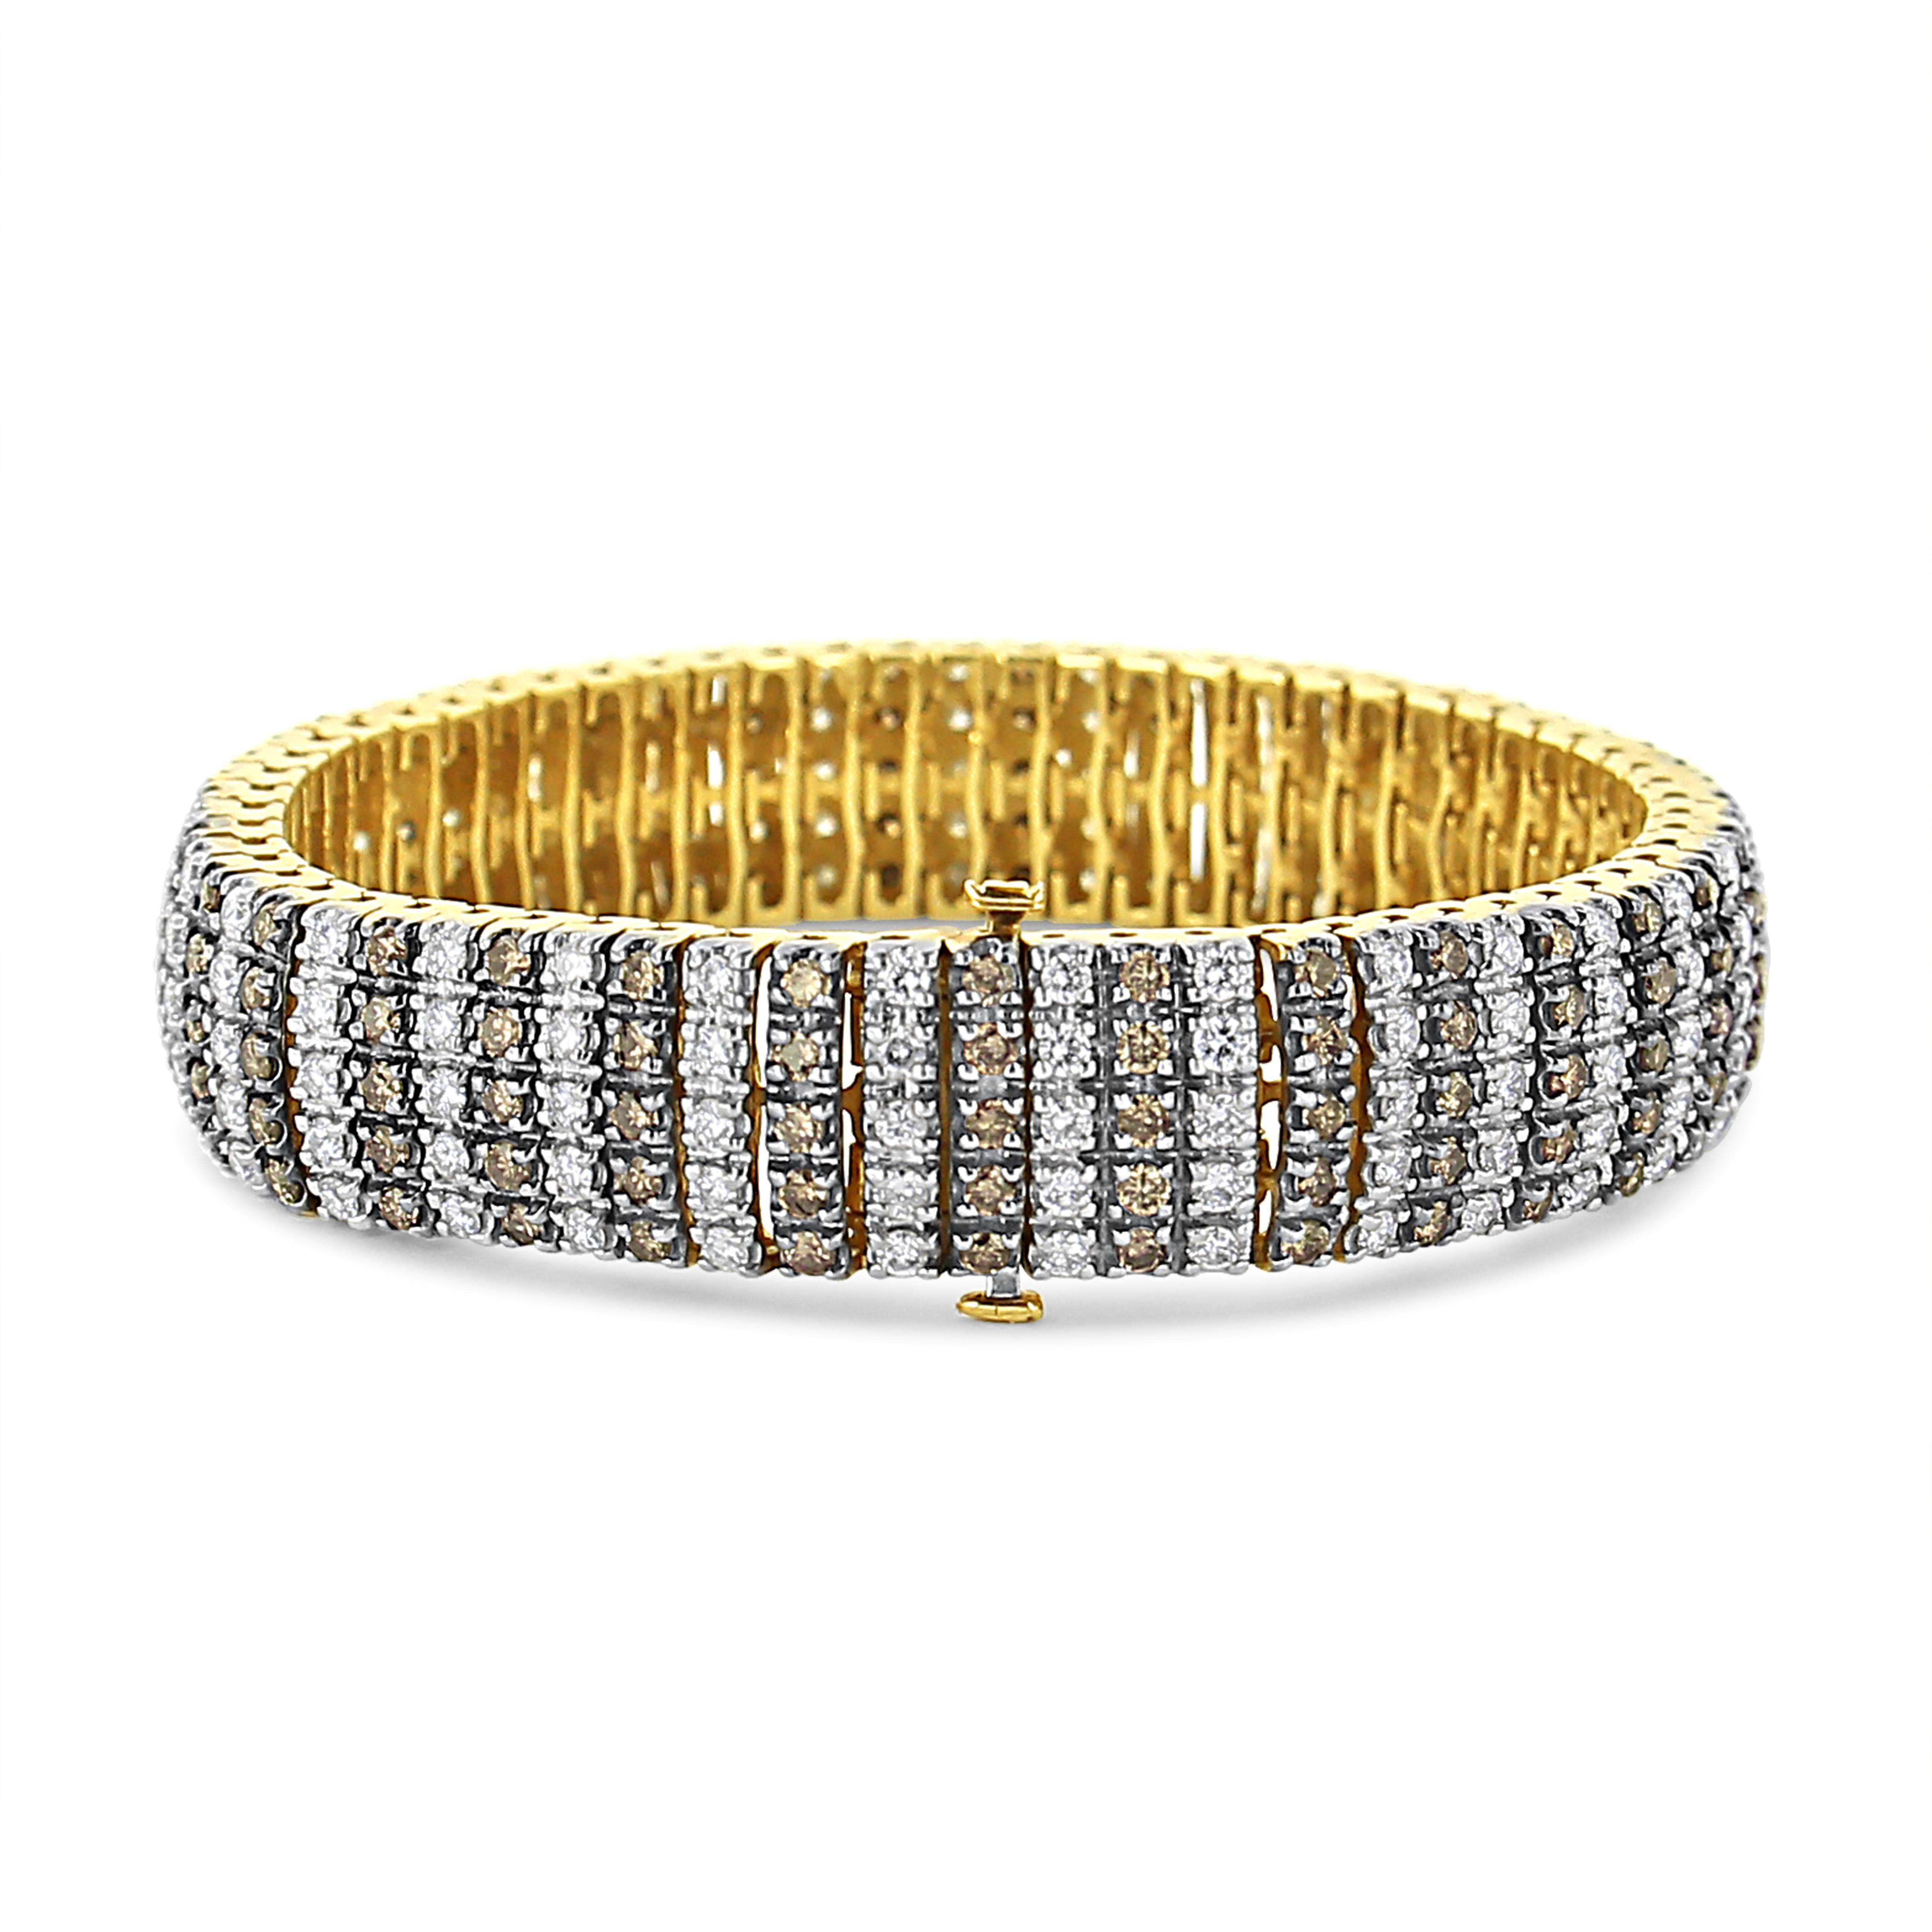 Vous n'avez jamais vu de glamour comme ce bracelet de tennis en diamants de 10 1/3 carats. Serti en or jaune 10k sits rangées de diamants blancs naturels de taille ronde alternant avec des rangées de diamants bruns traités en couleur dans une